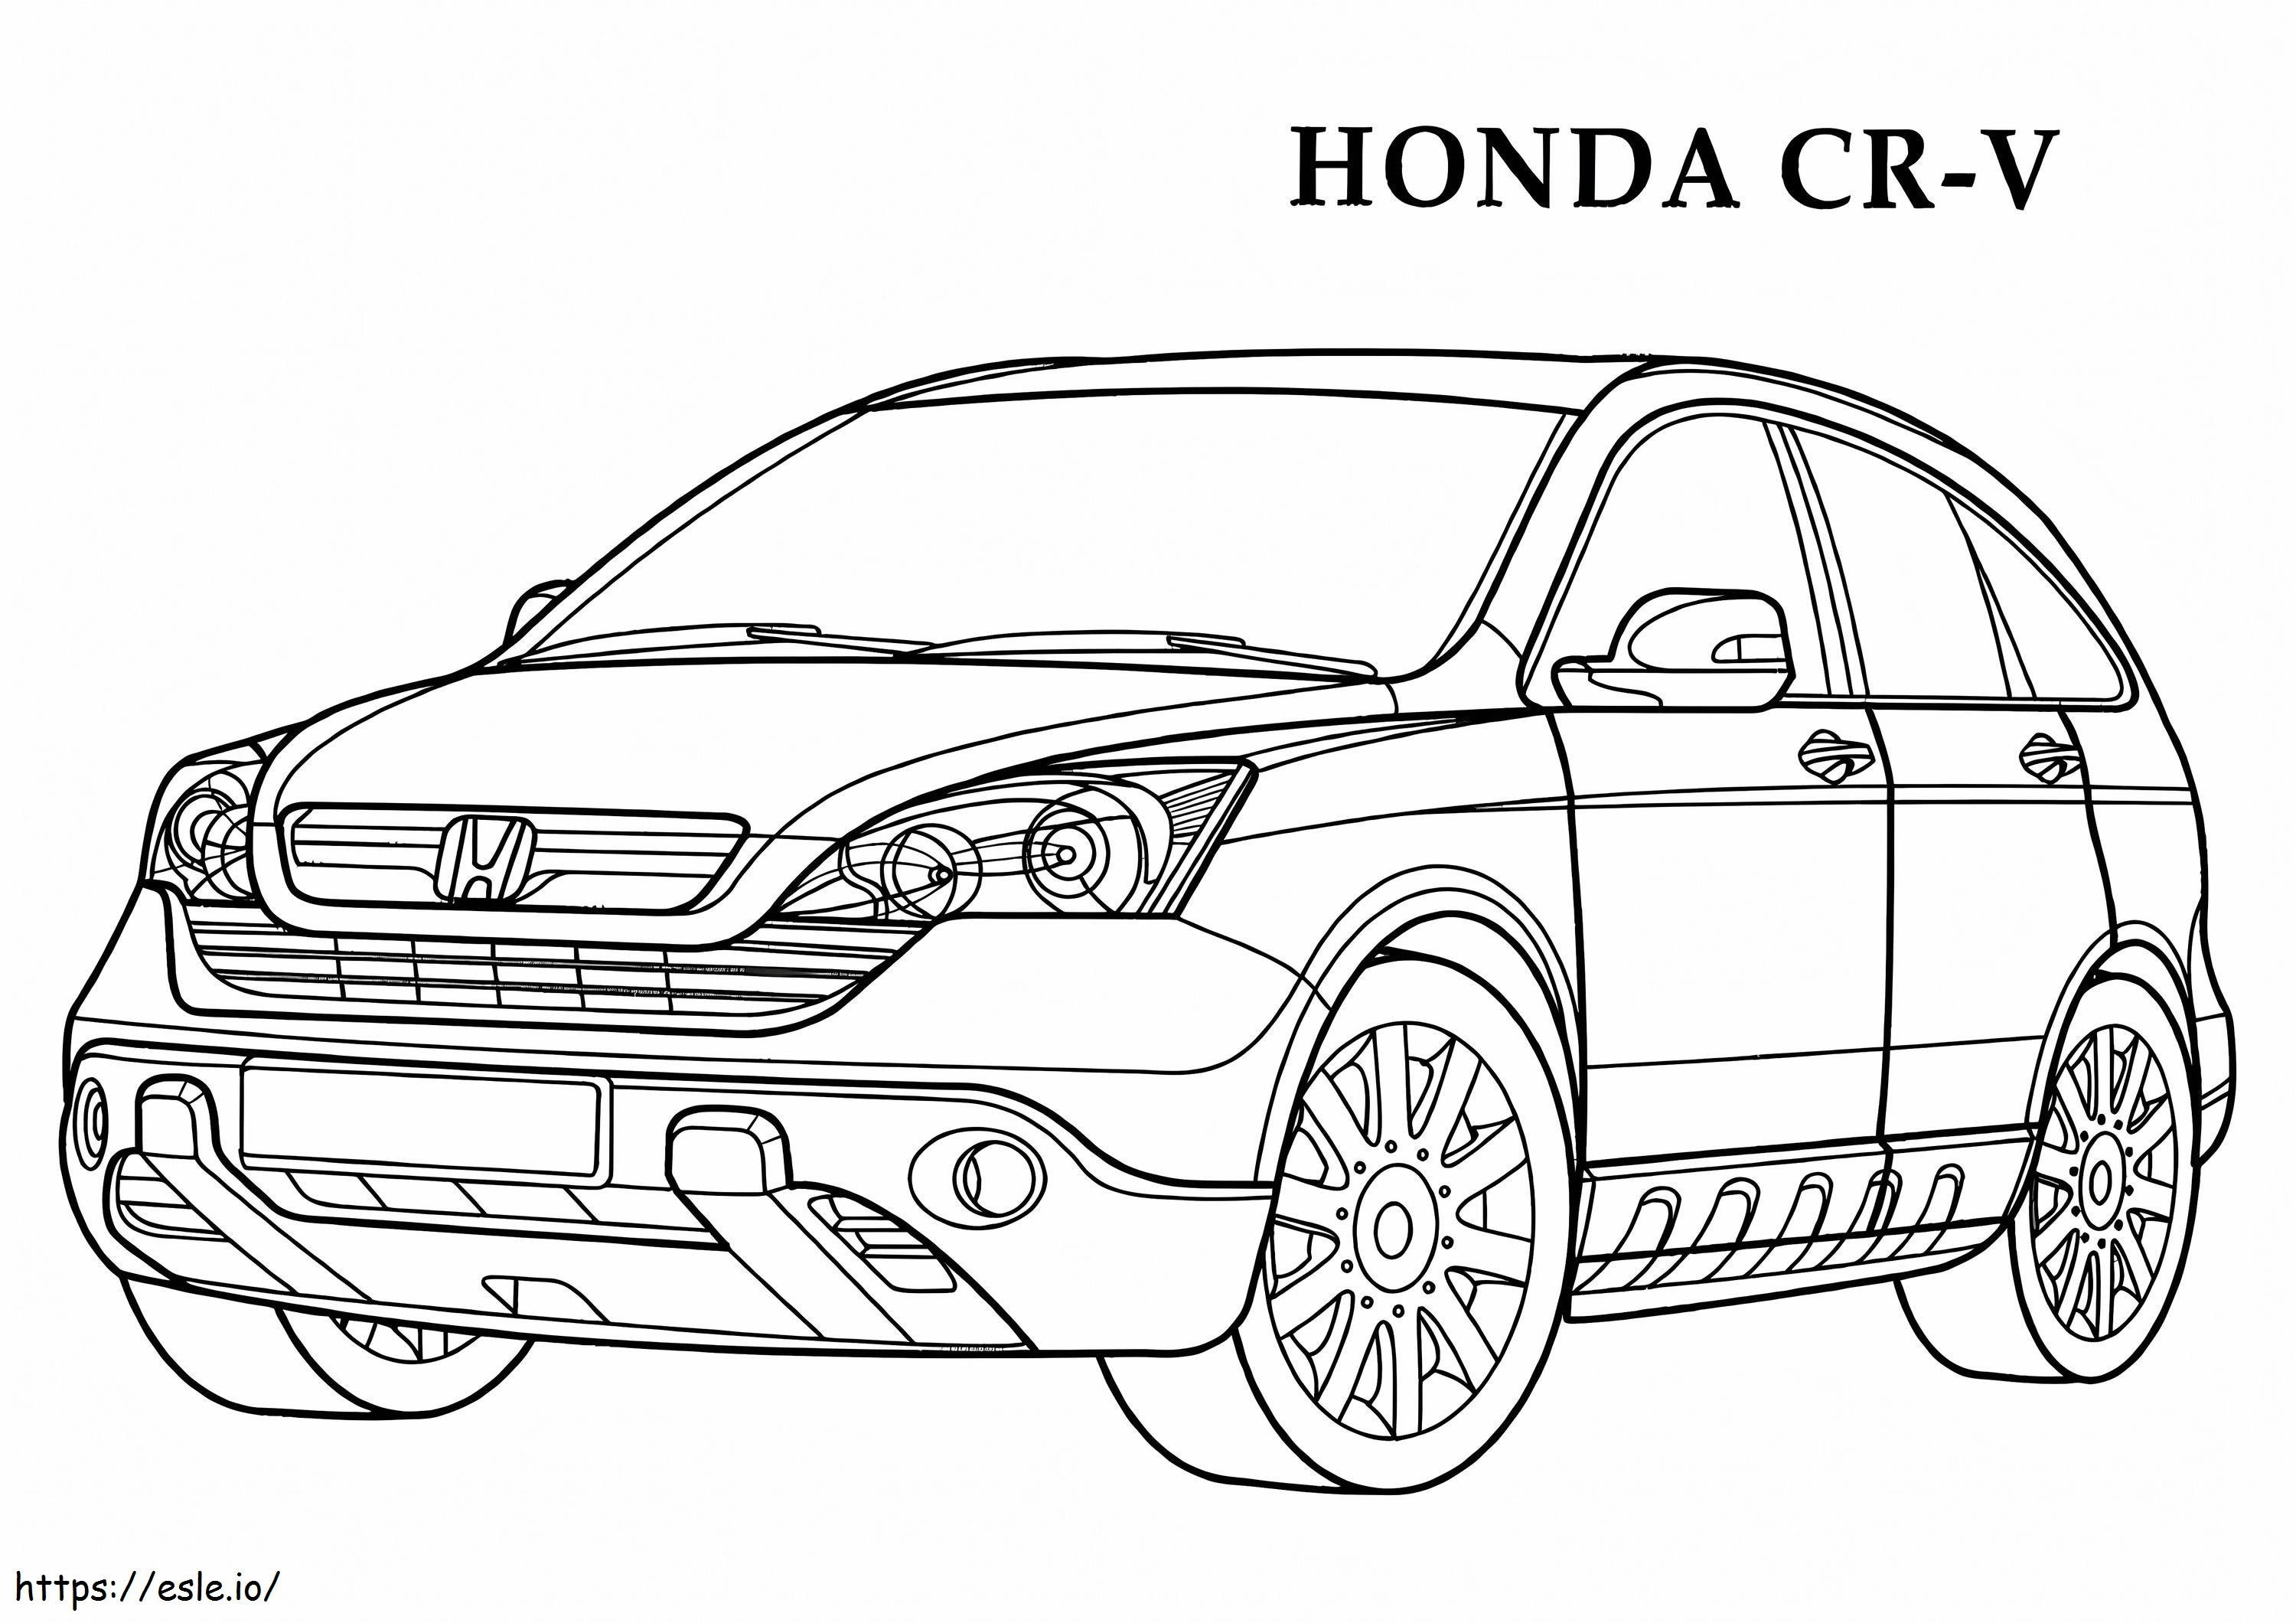 Honda CRV2 para colorear